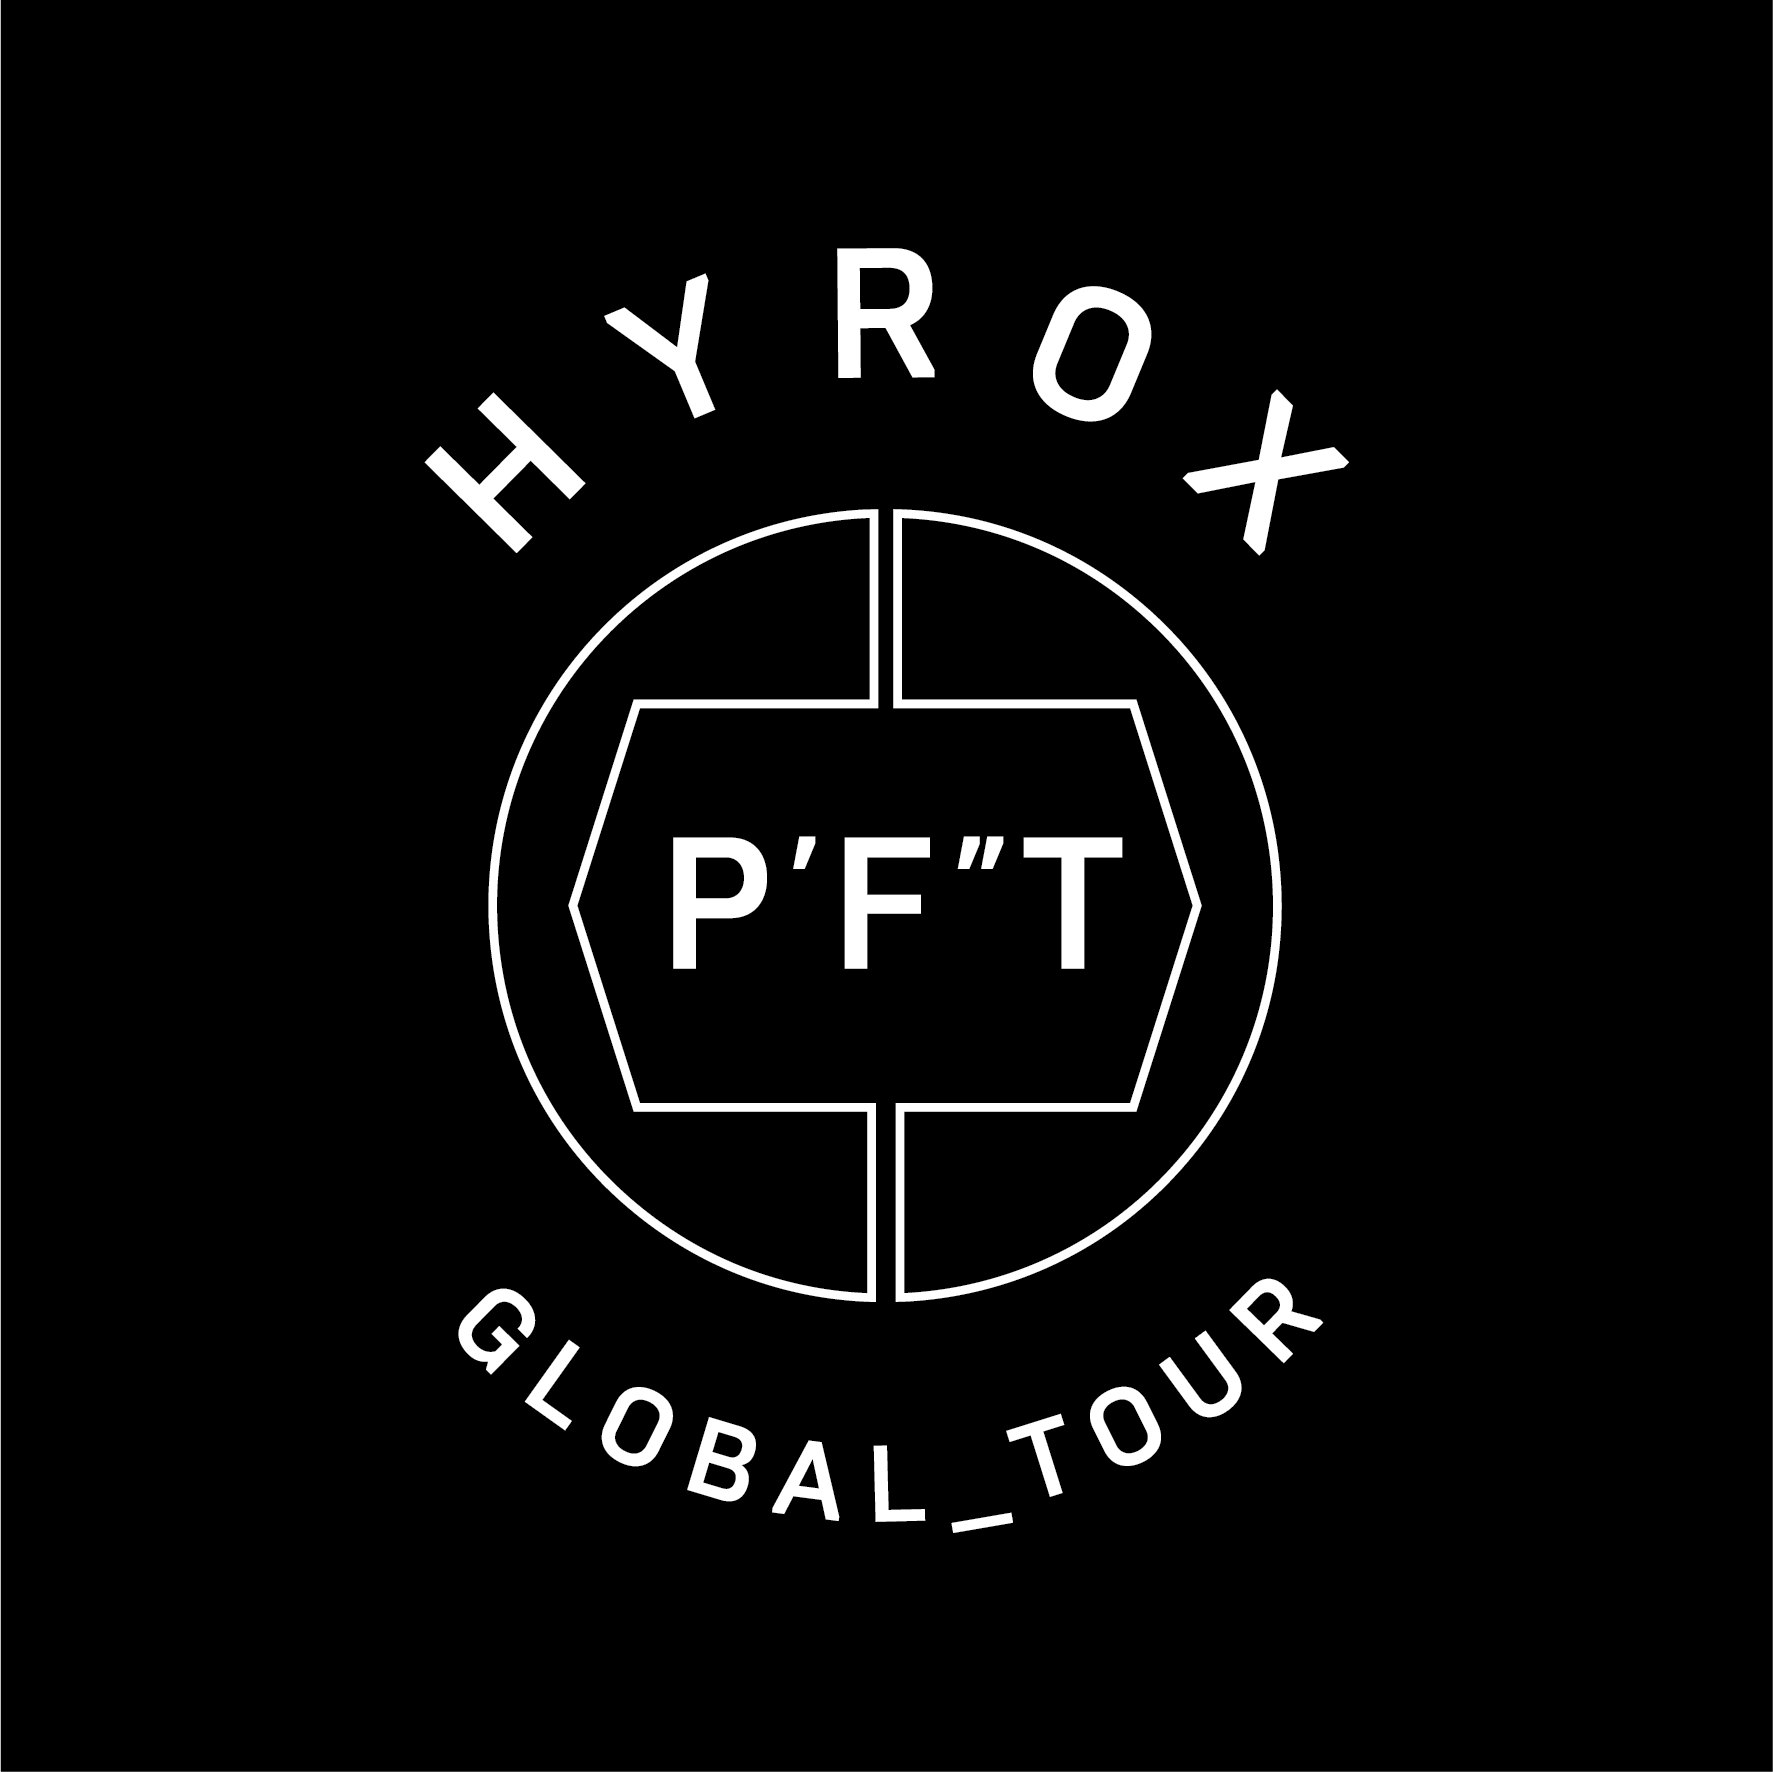 HYROX PFT @ FT-CLUB Köln